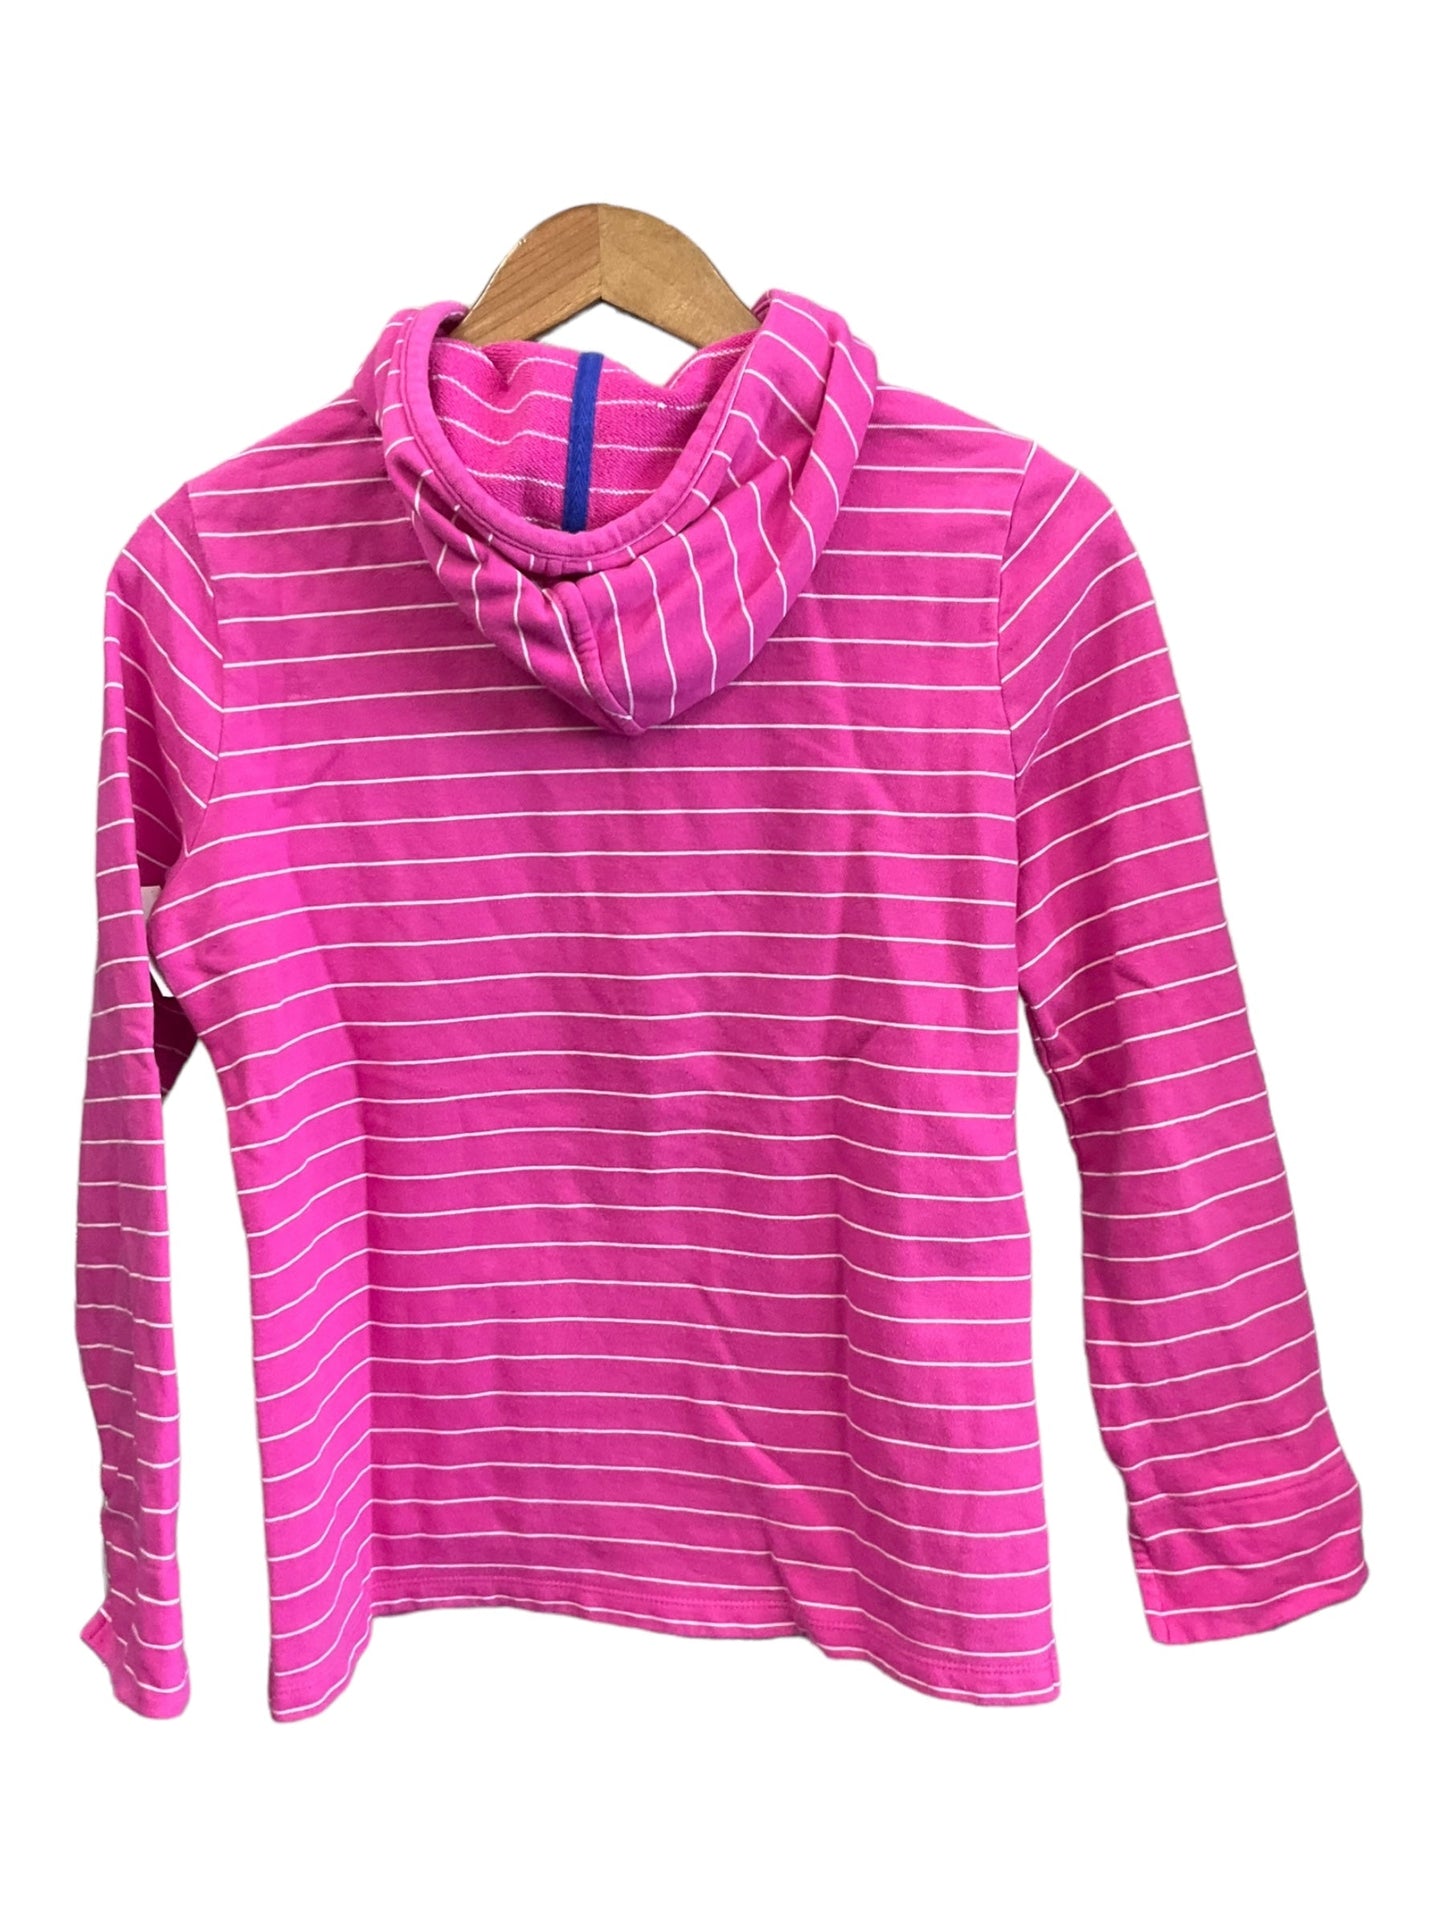 Athletic Sweatshirt Hoodie By Vineyard Vines  Size: S